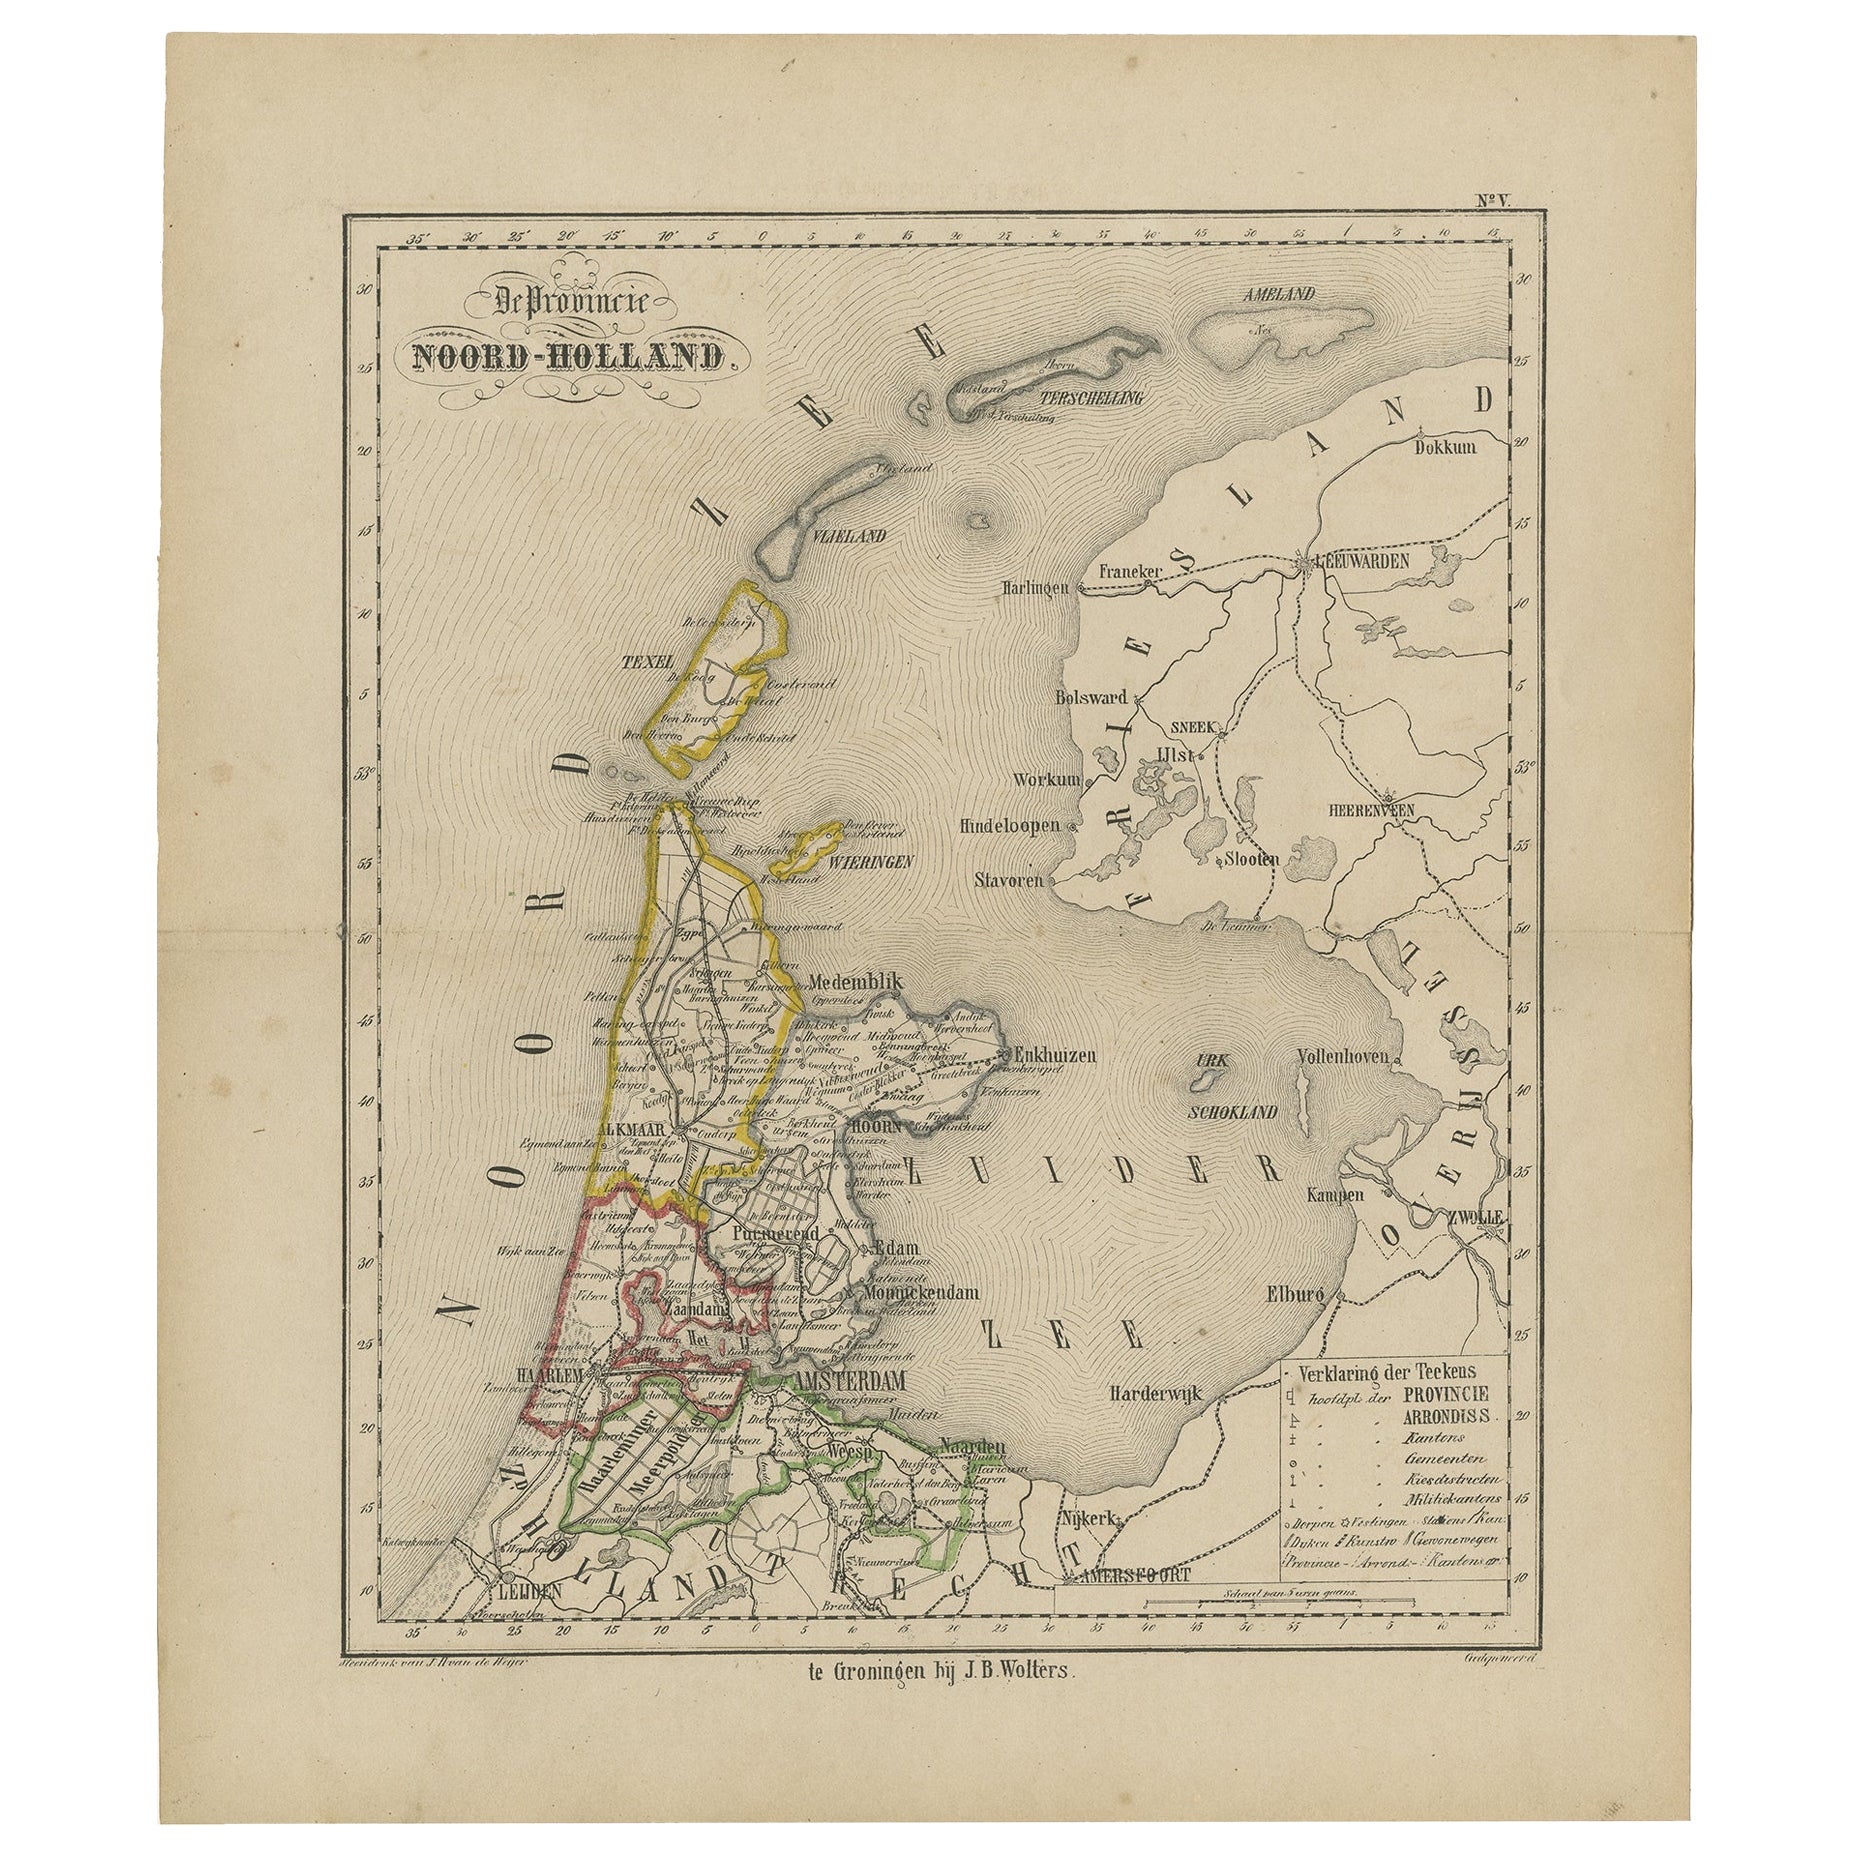 Antike Karte der Provinz Noord-Holland in den Niederlanden, 1864